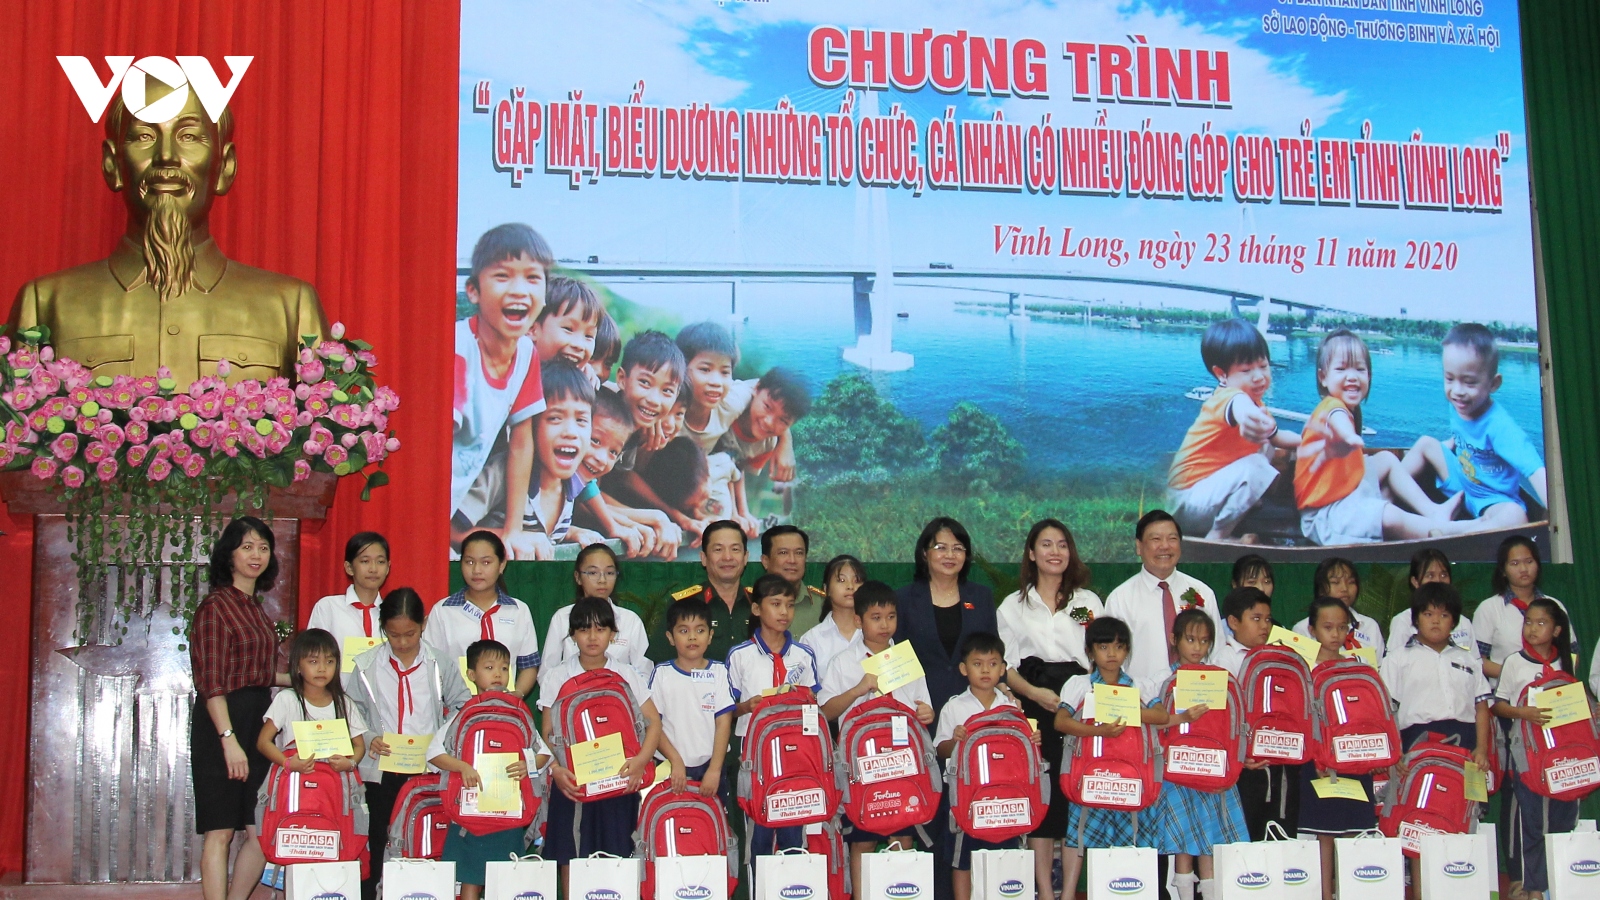 Hơn 60 tỷ đồng được đóng góp cho trẻ em tỉnh Vĩnh Long